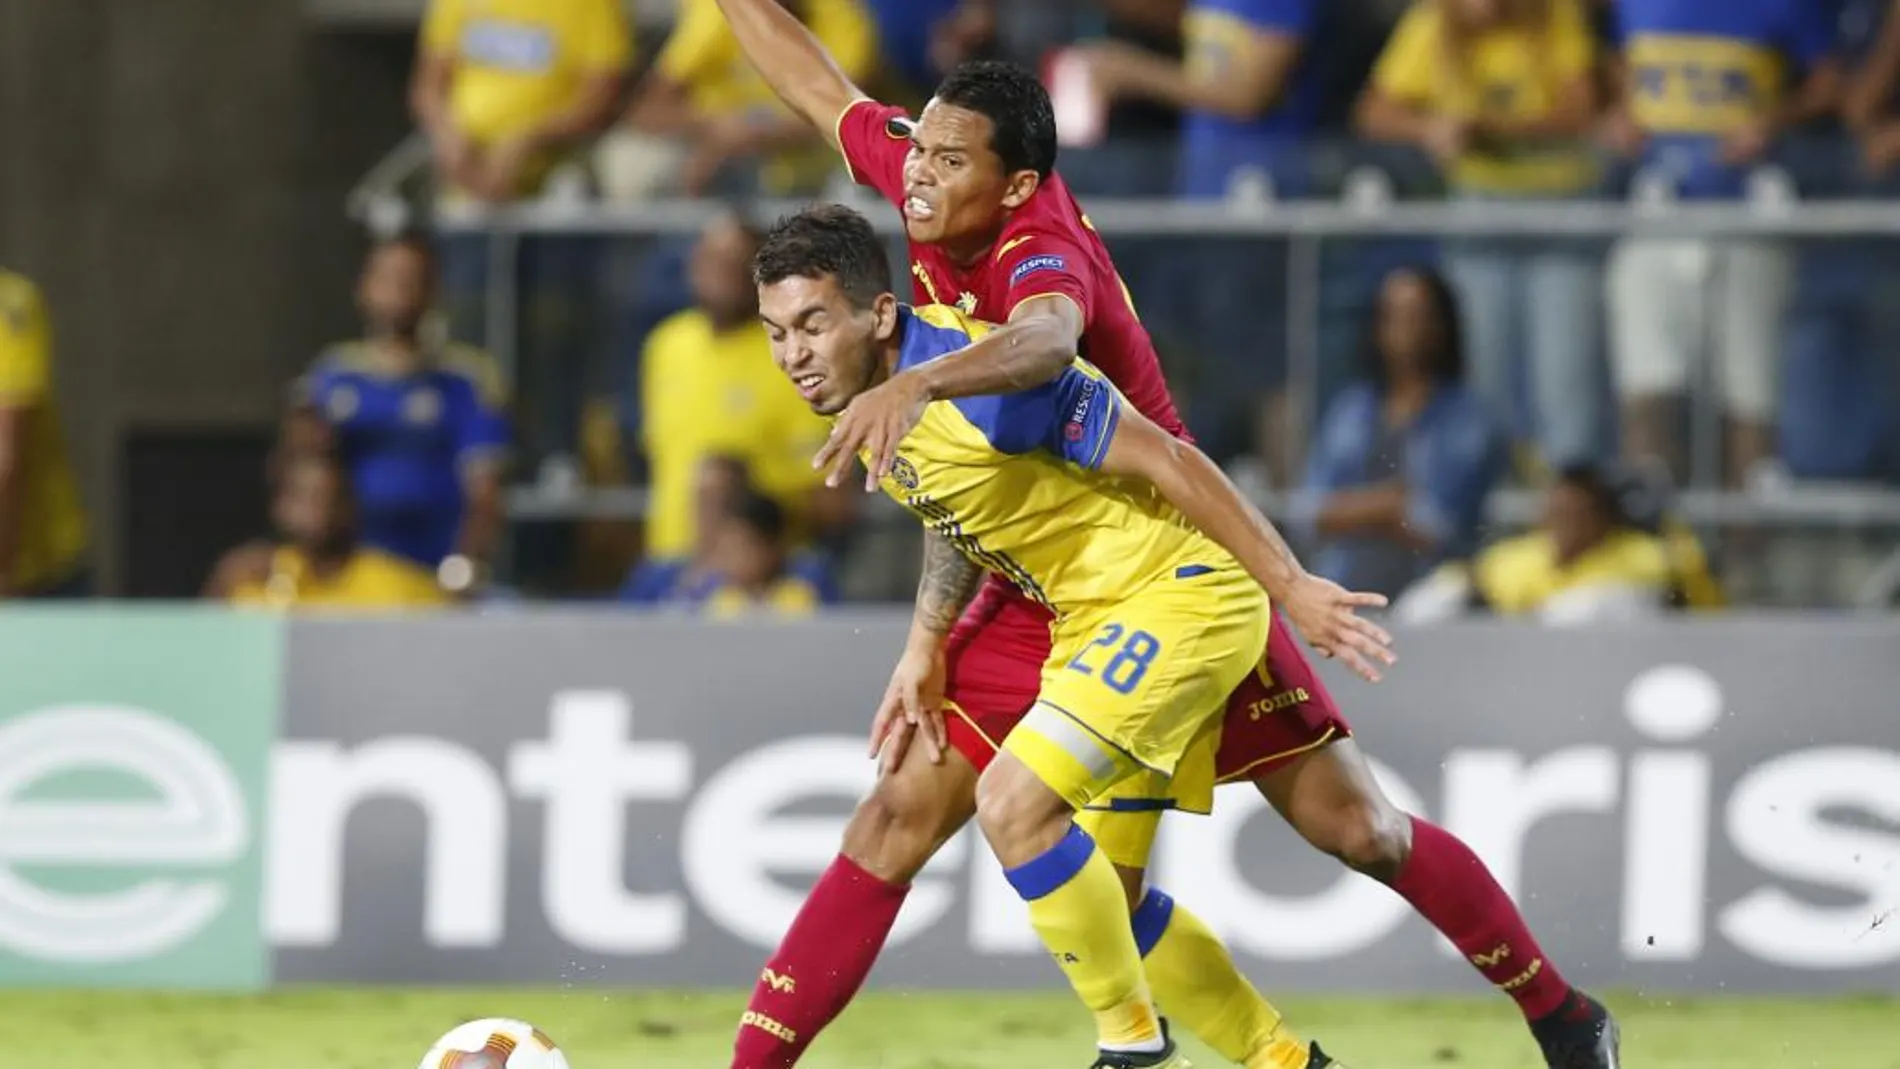 0-0. El Villarreal resuelve su visita al Maccabi con empate